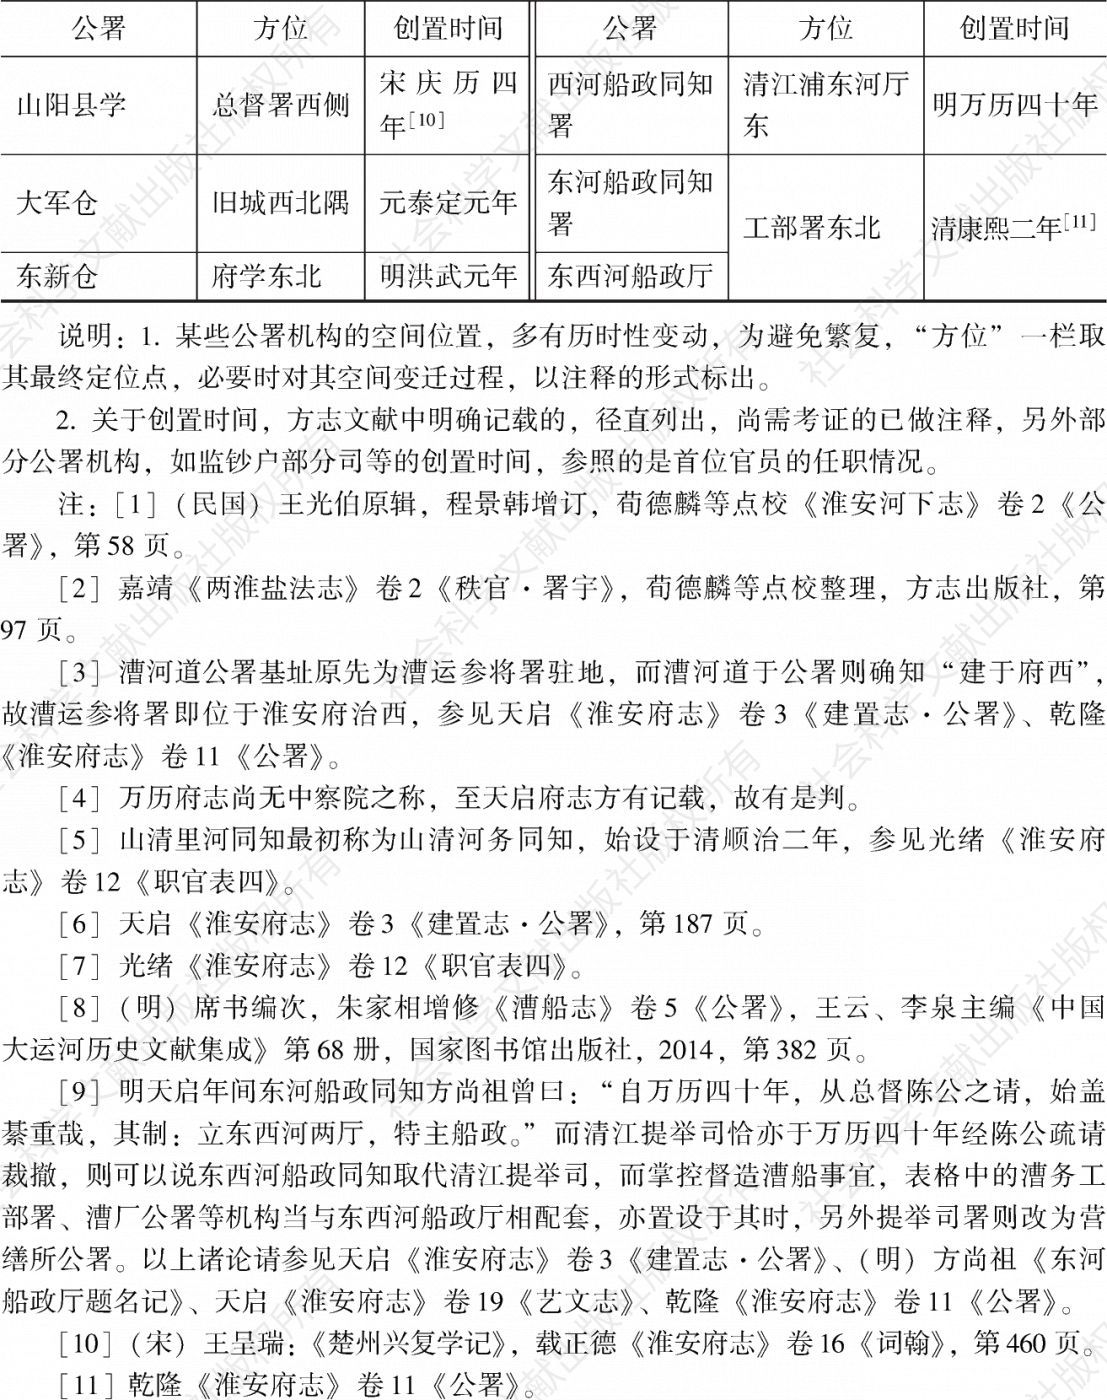 表3-1 明清山阳县公署机构表-续表